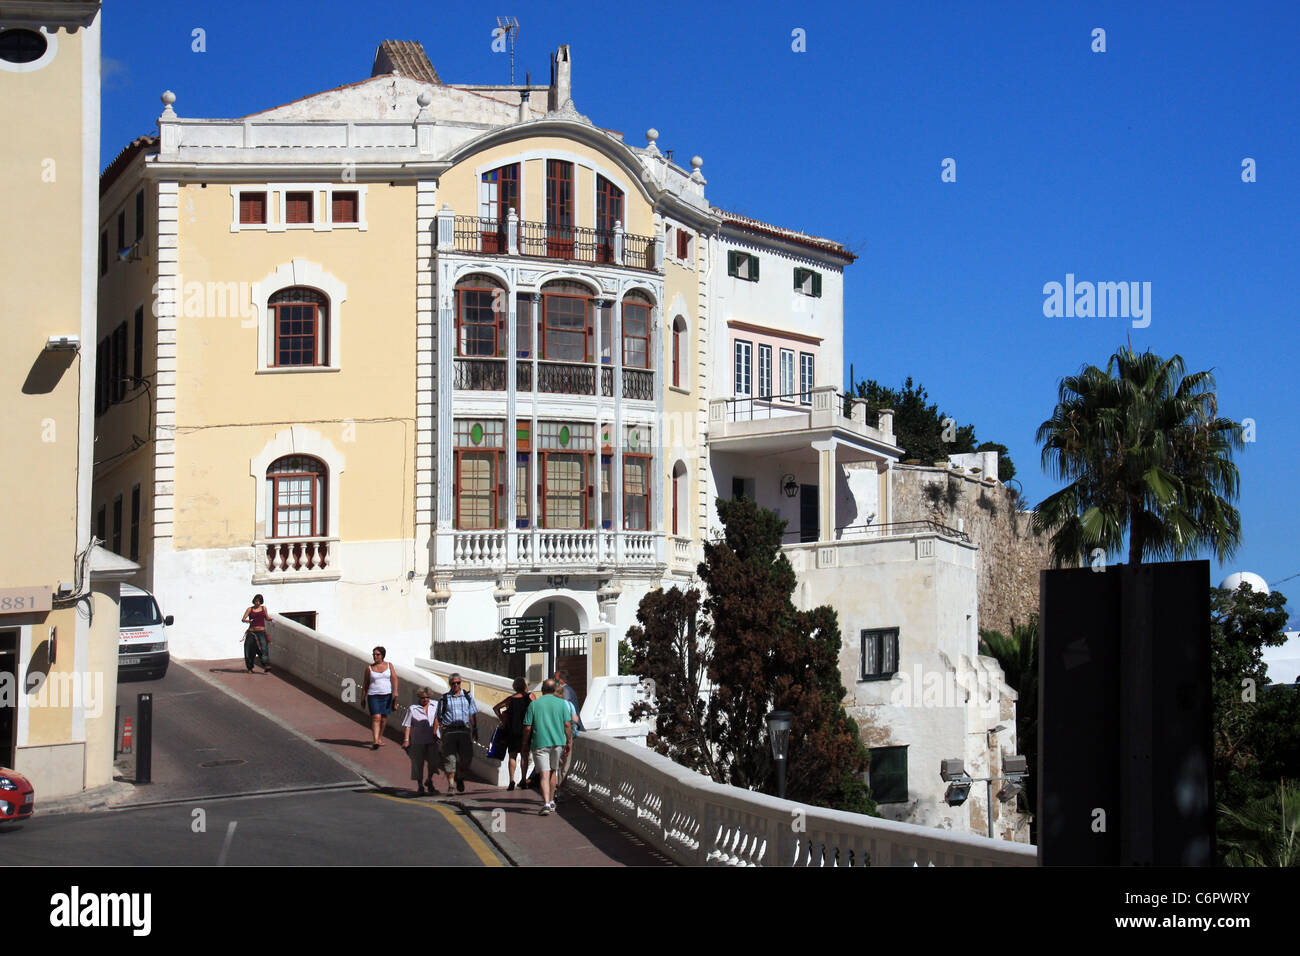 Una casa de pueblo en Menorca Foto de stock